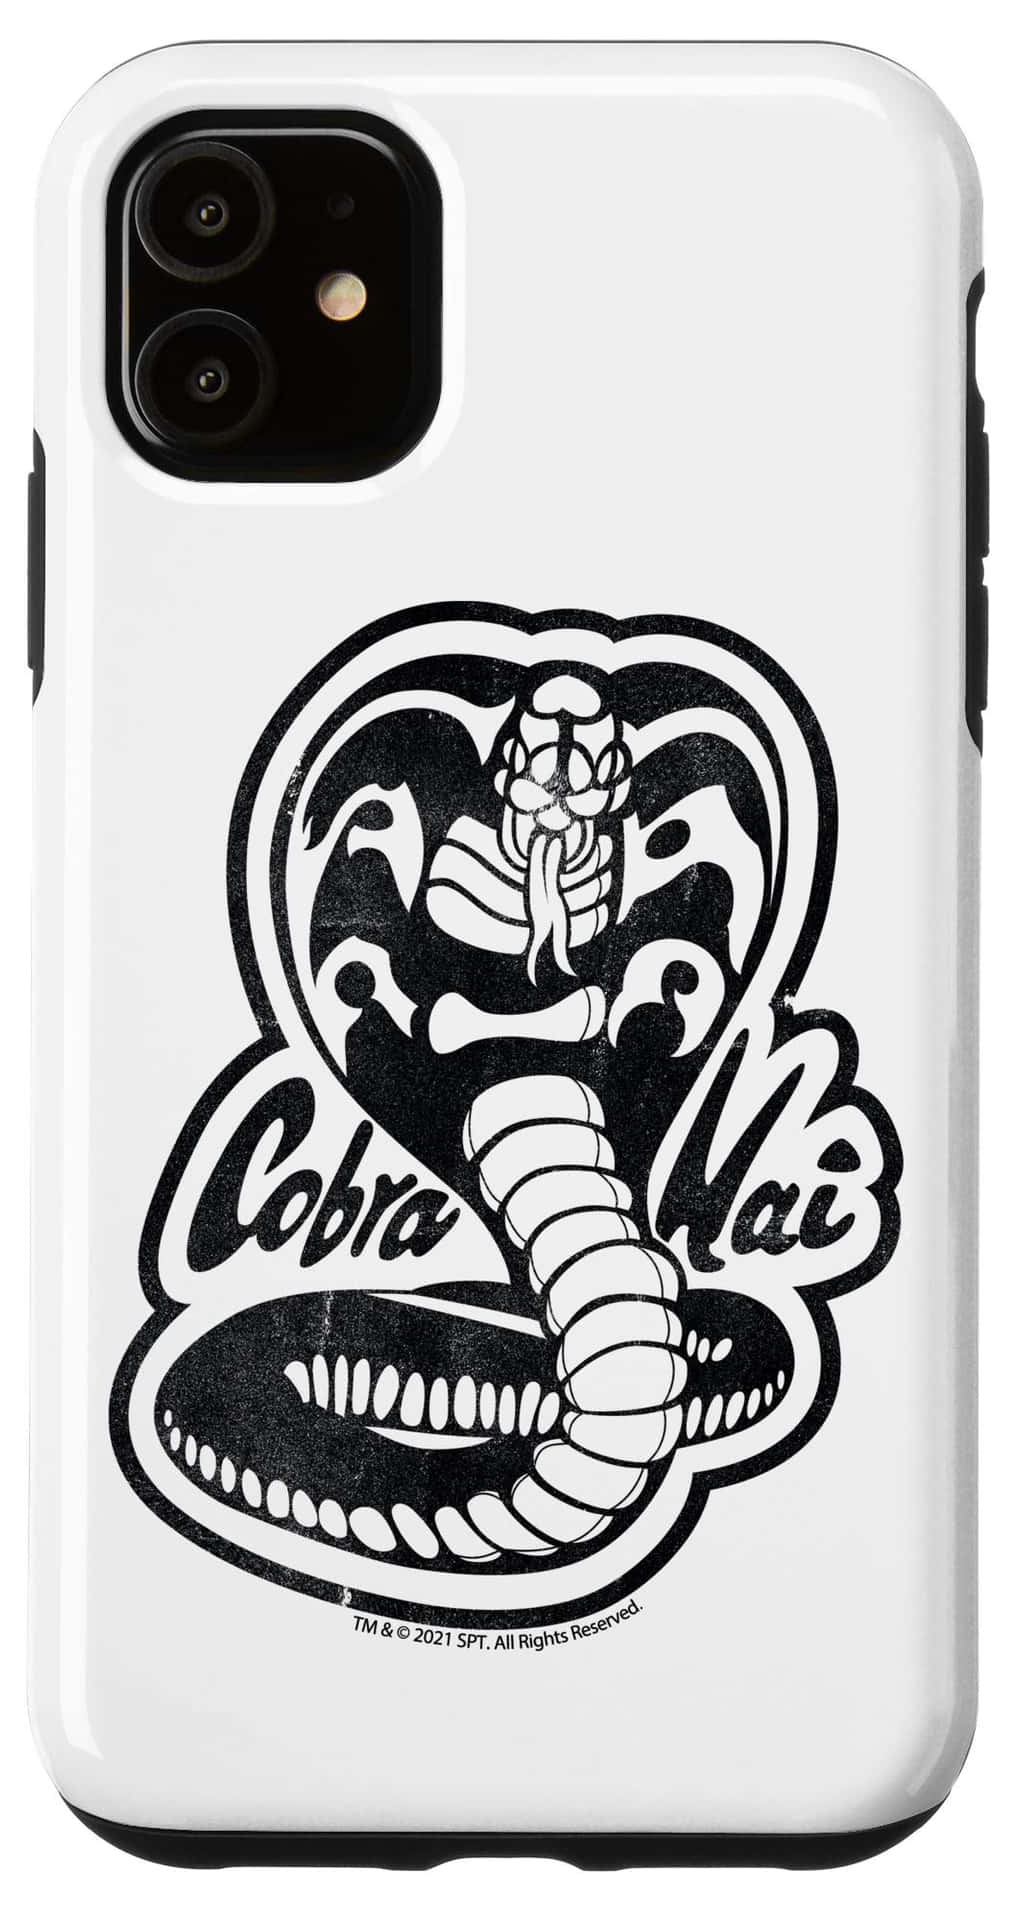 Planode Fundo Do Logotipo Preto De Cobra Kai Para O Iphone Xr.